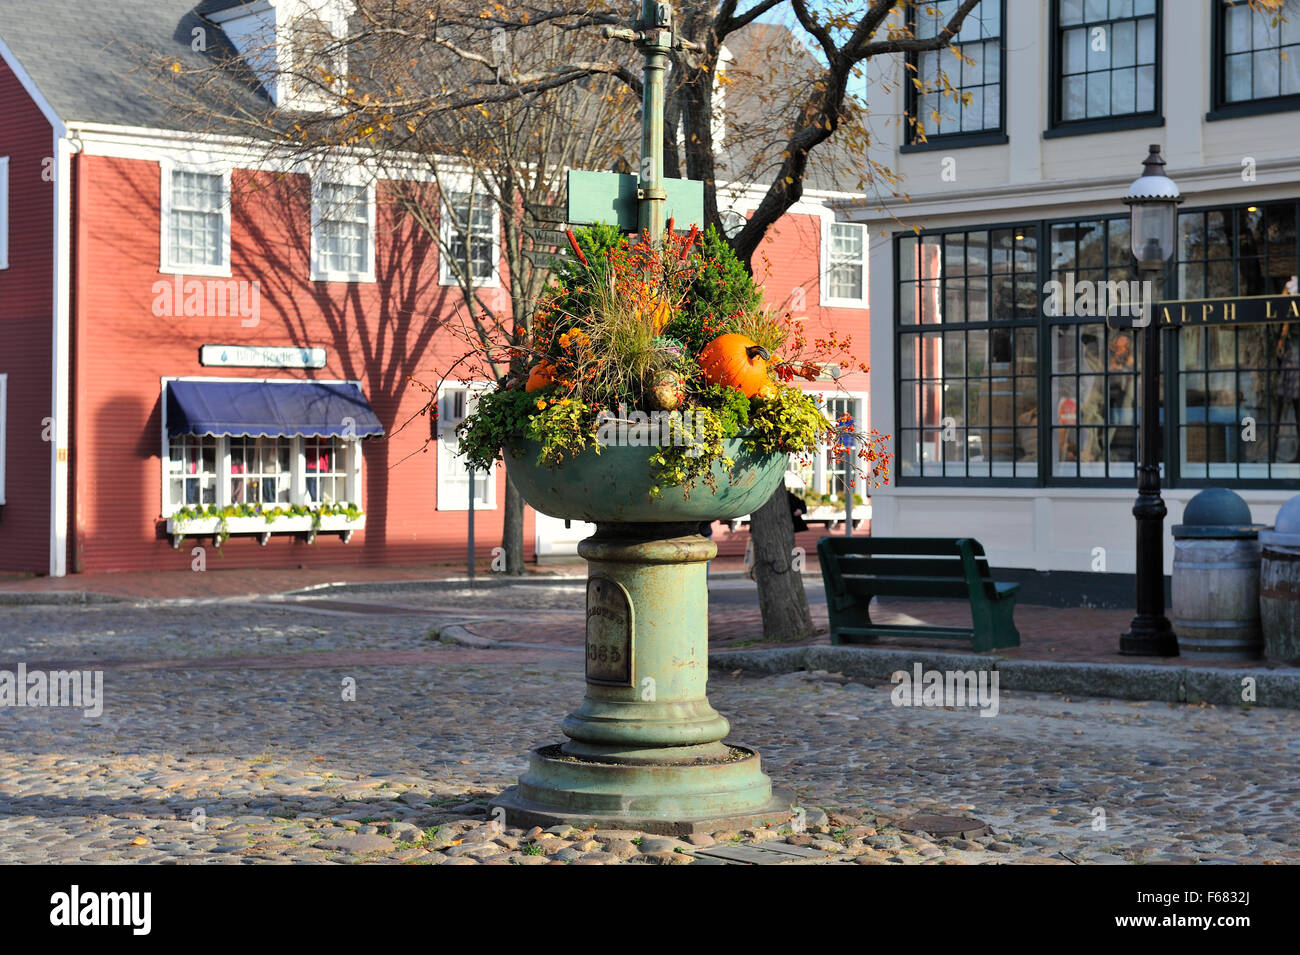 Fall Cornucopia in a town square, Nantucket, Cape Cod Massachusetts USA in autumn. Stock Photo